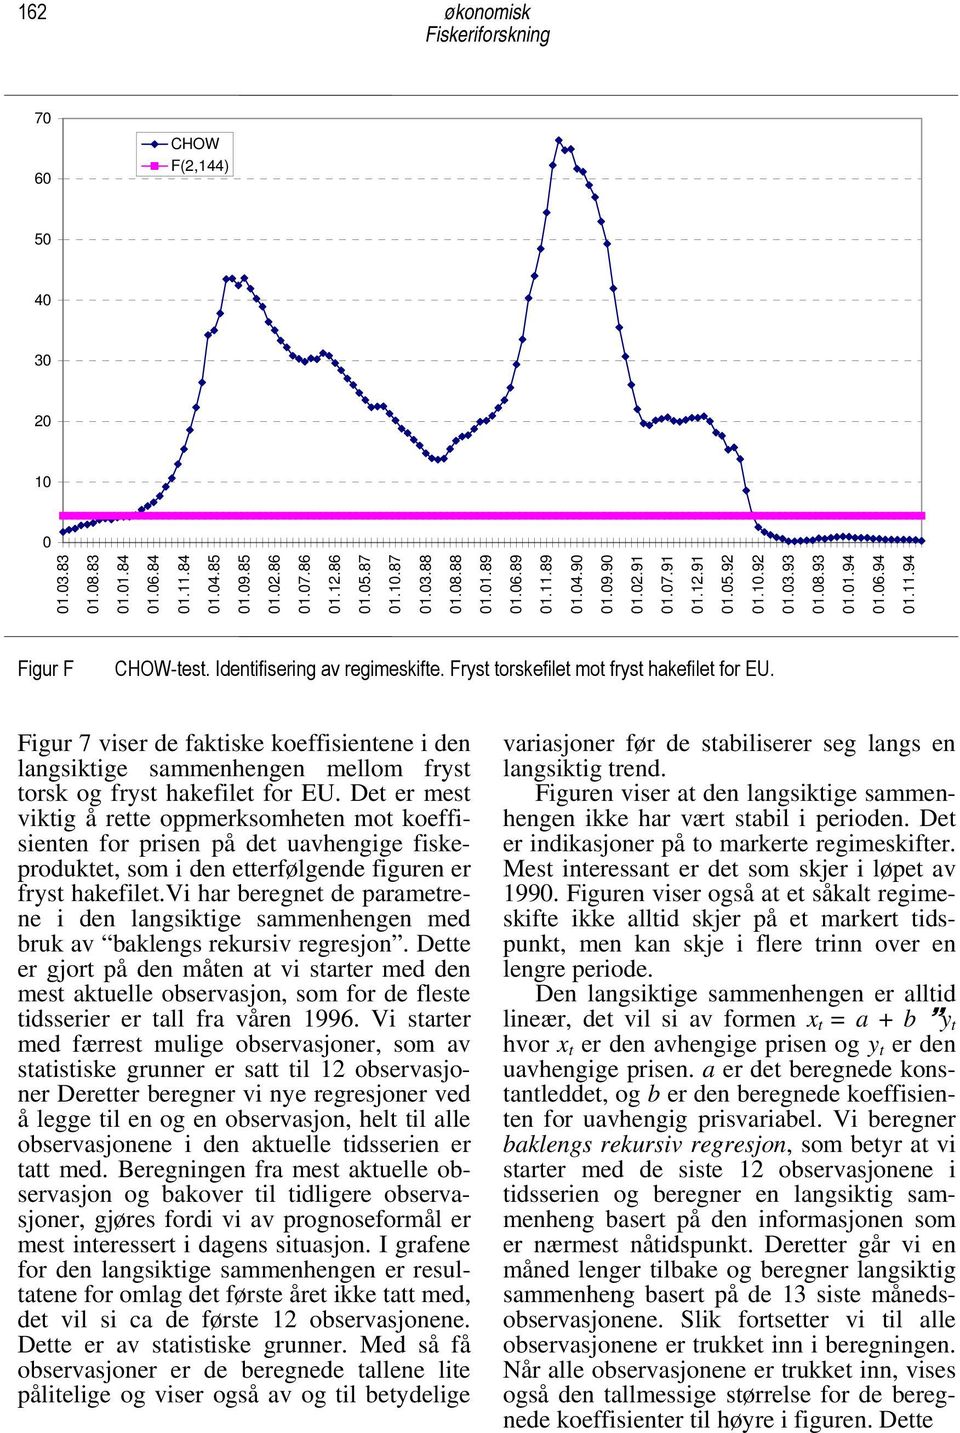 Figur 7 viser de faktiske koeffisientene i den langsiktige sammenhengen mellom fryst torsk og fryst hakefilet for EU.